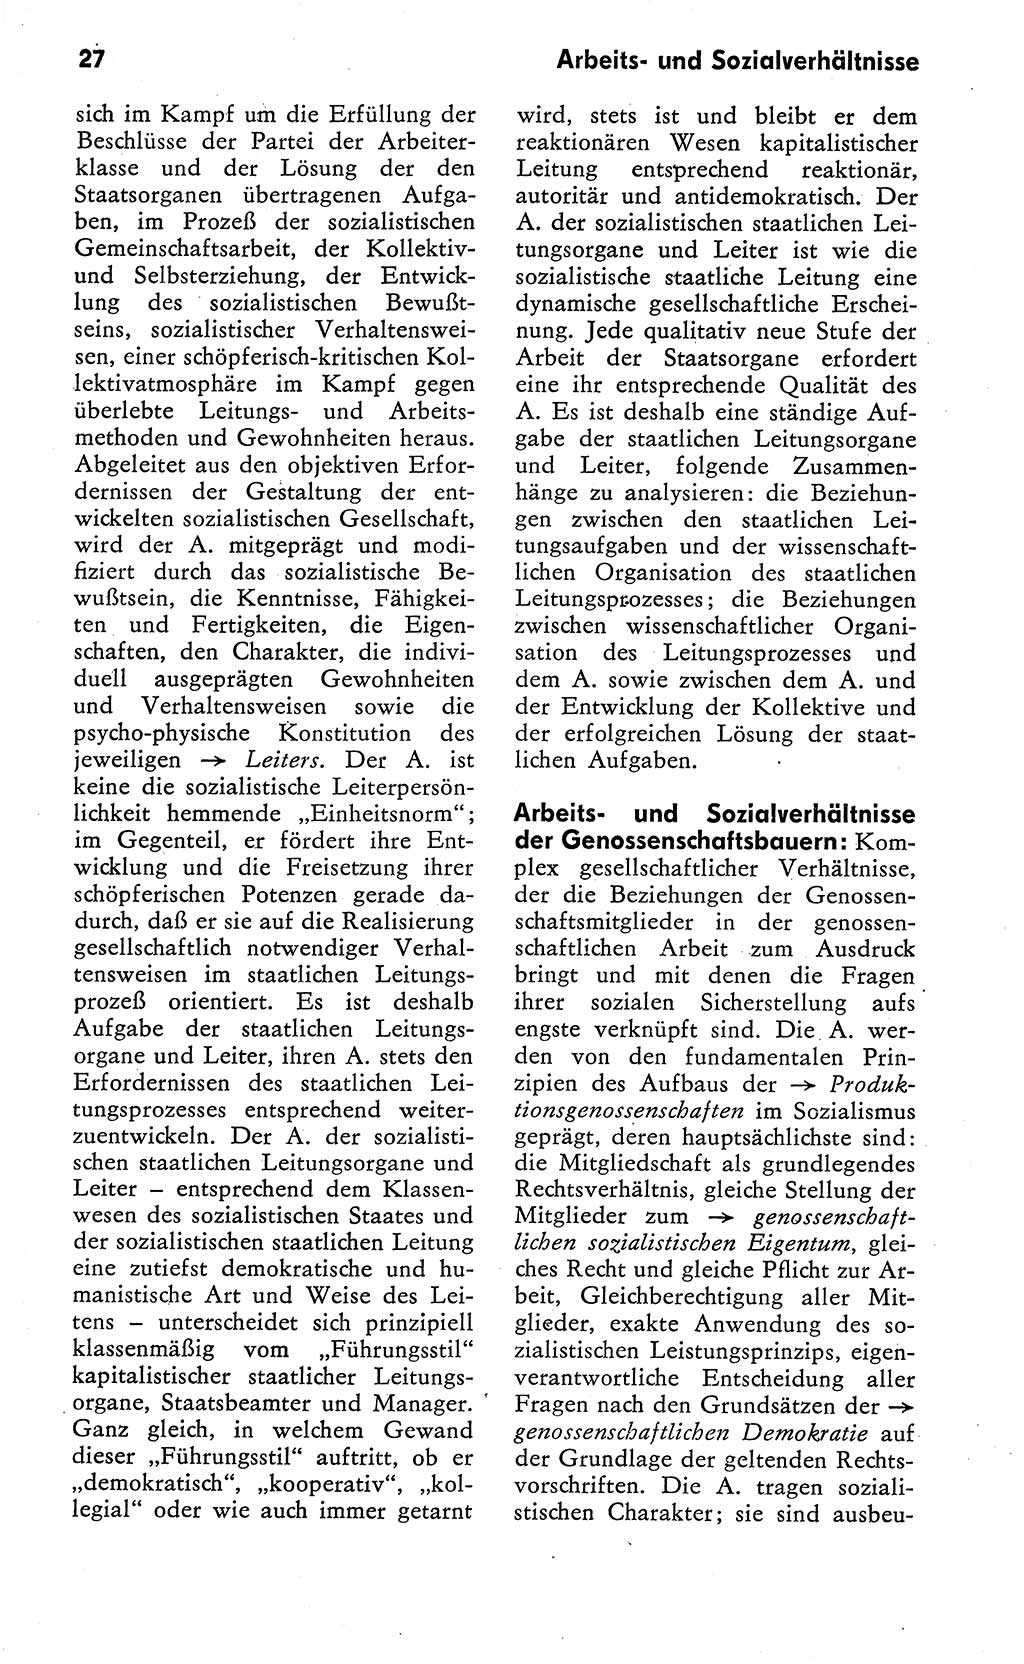 Wörterbuch zum sozialistischen Staat [Deutsche Demokratische Republik (DDR)] 1974, Seite 27 (Wb. soz. St. DDR 1974, S. 27)